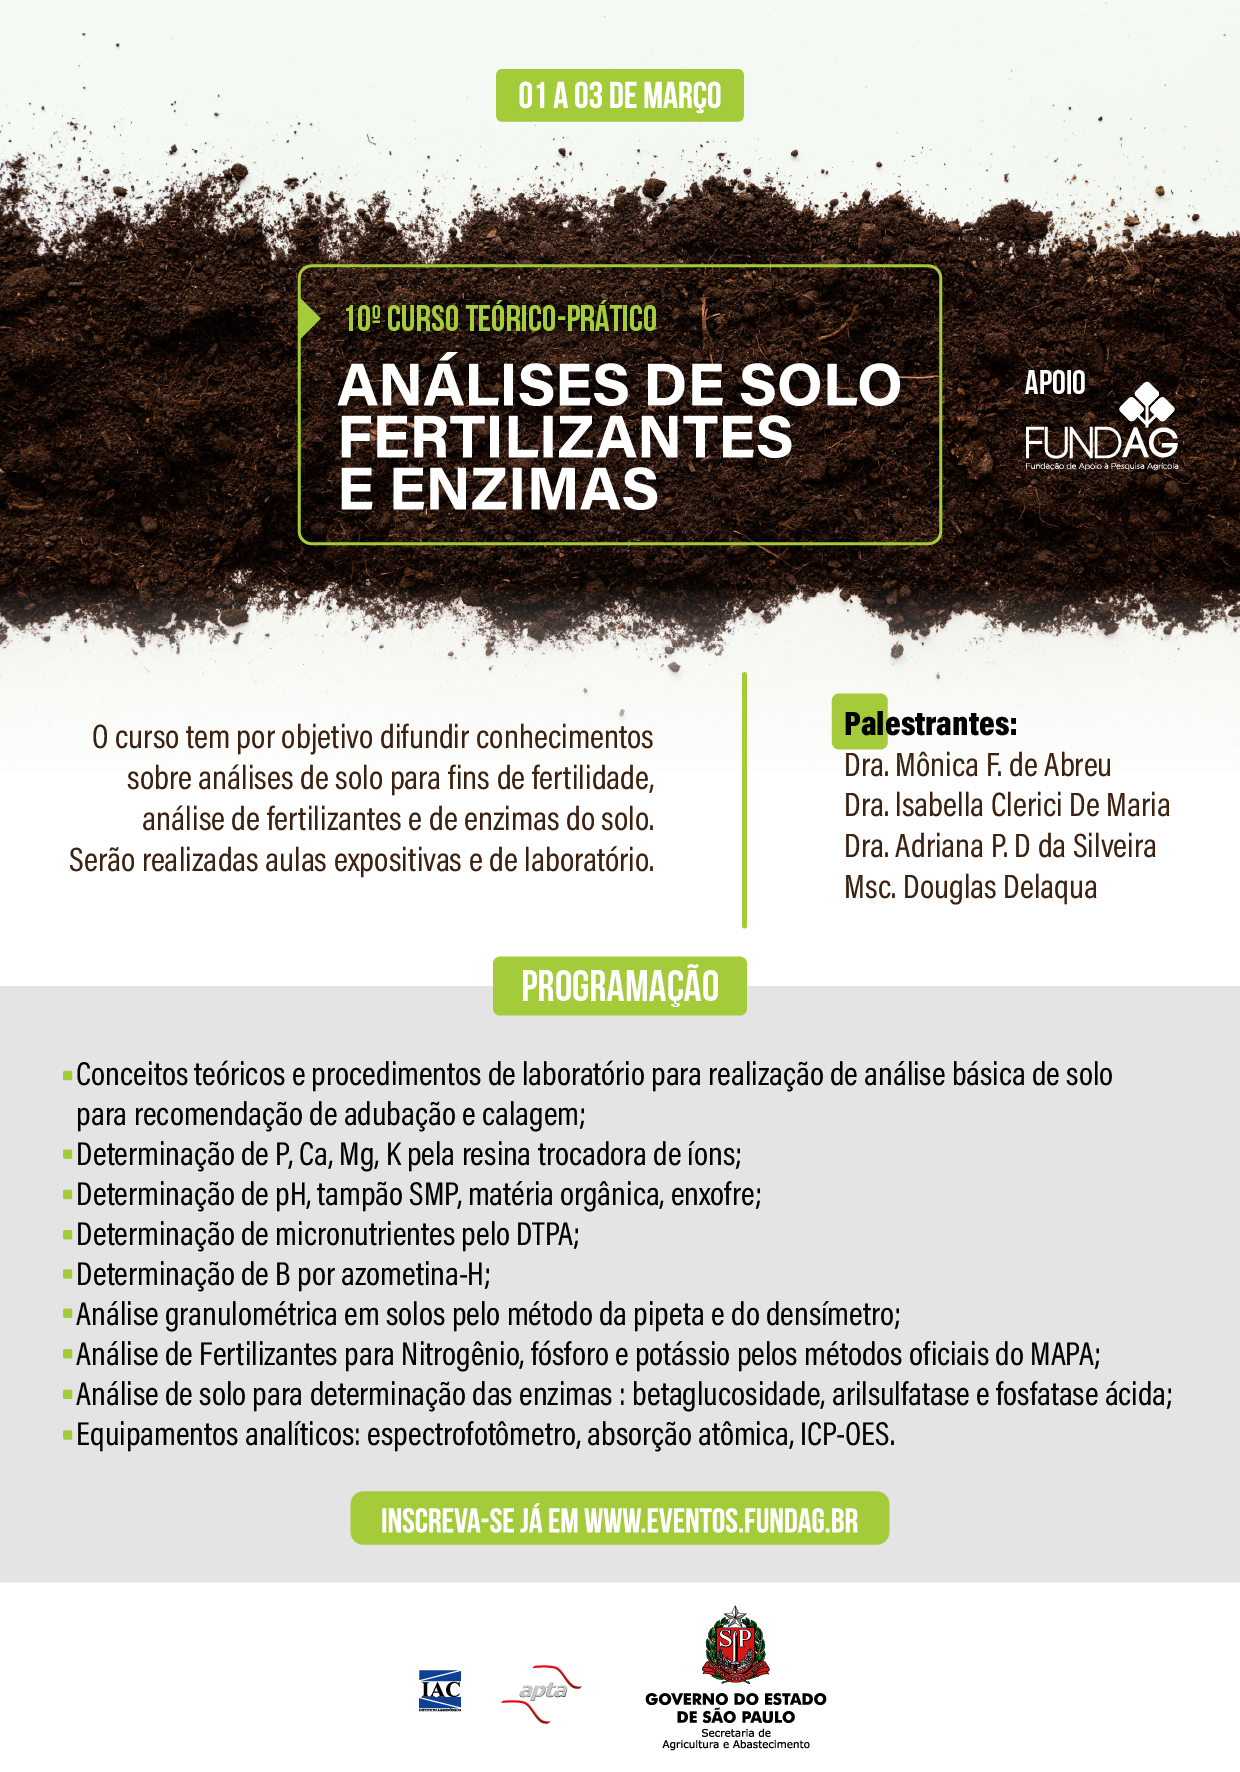 10º Curso teórico-prático em análises de solo, fertilizantes e enzimas